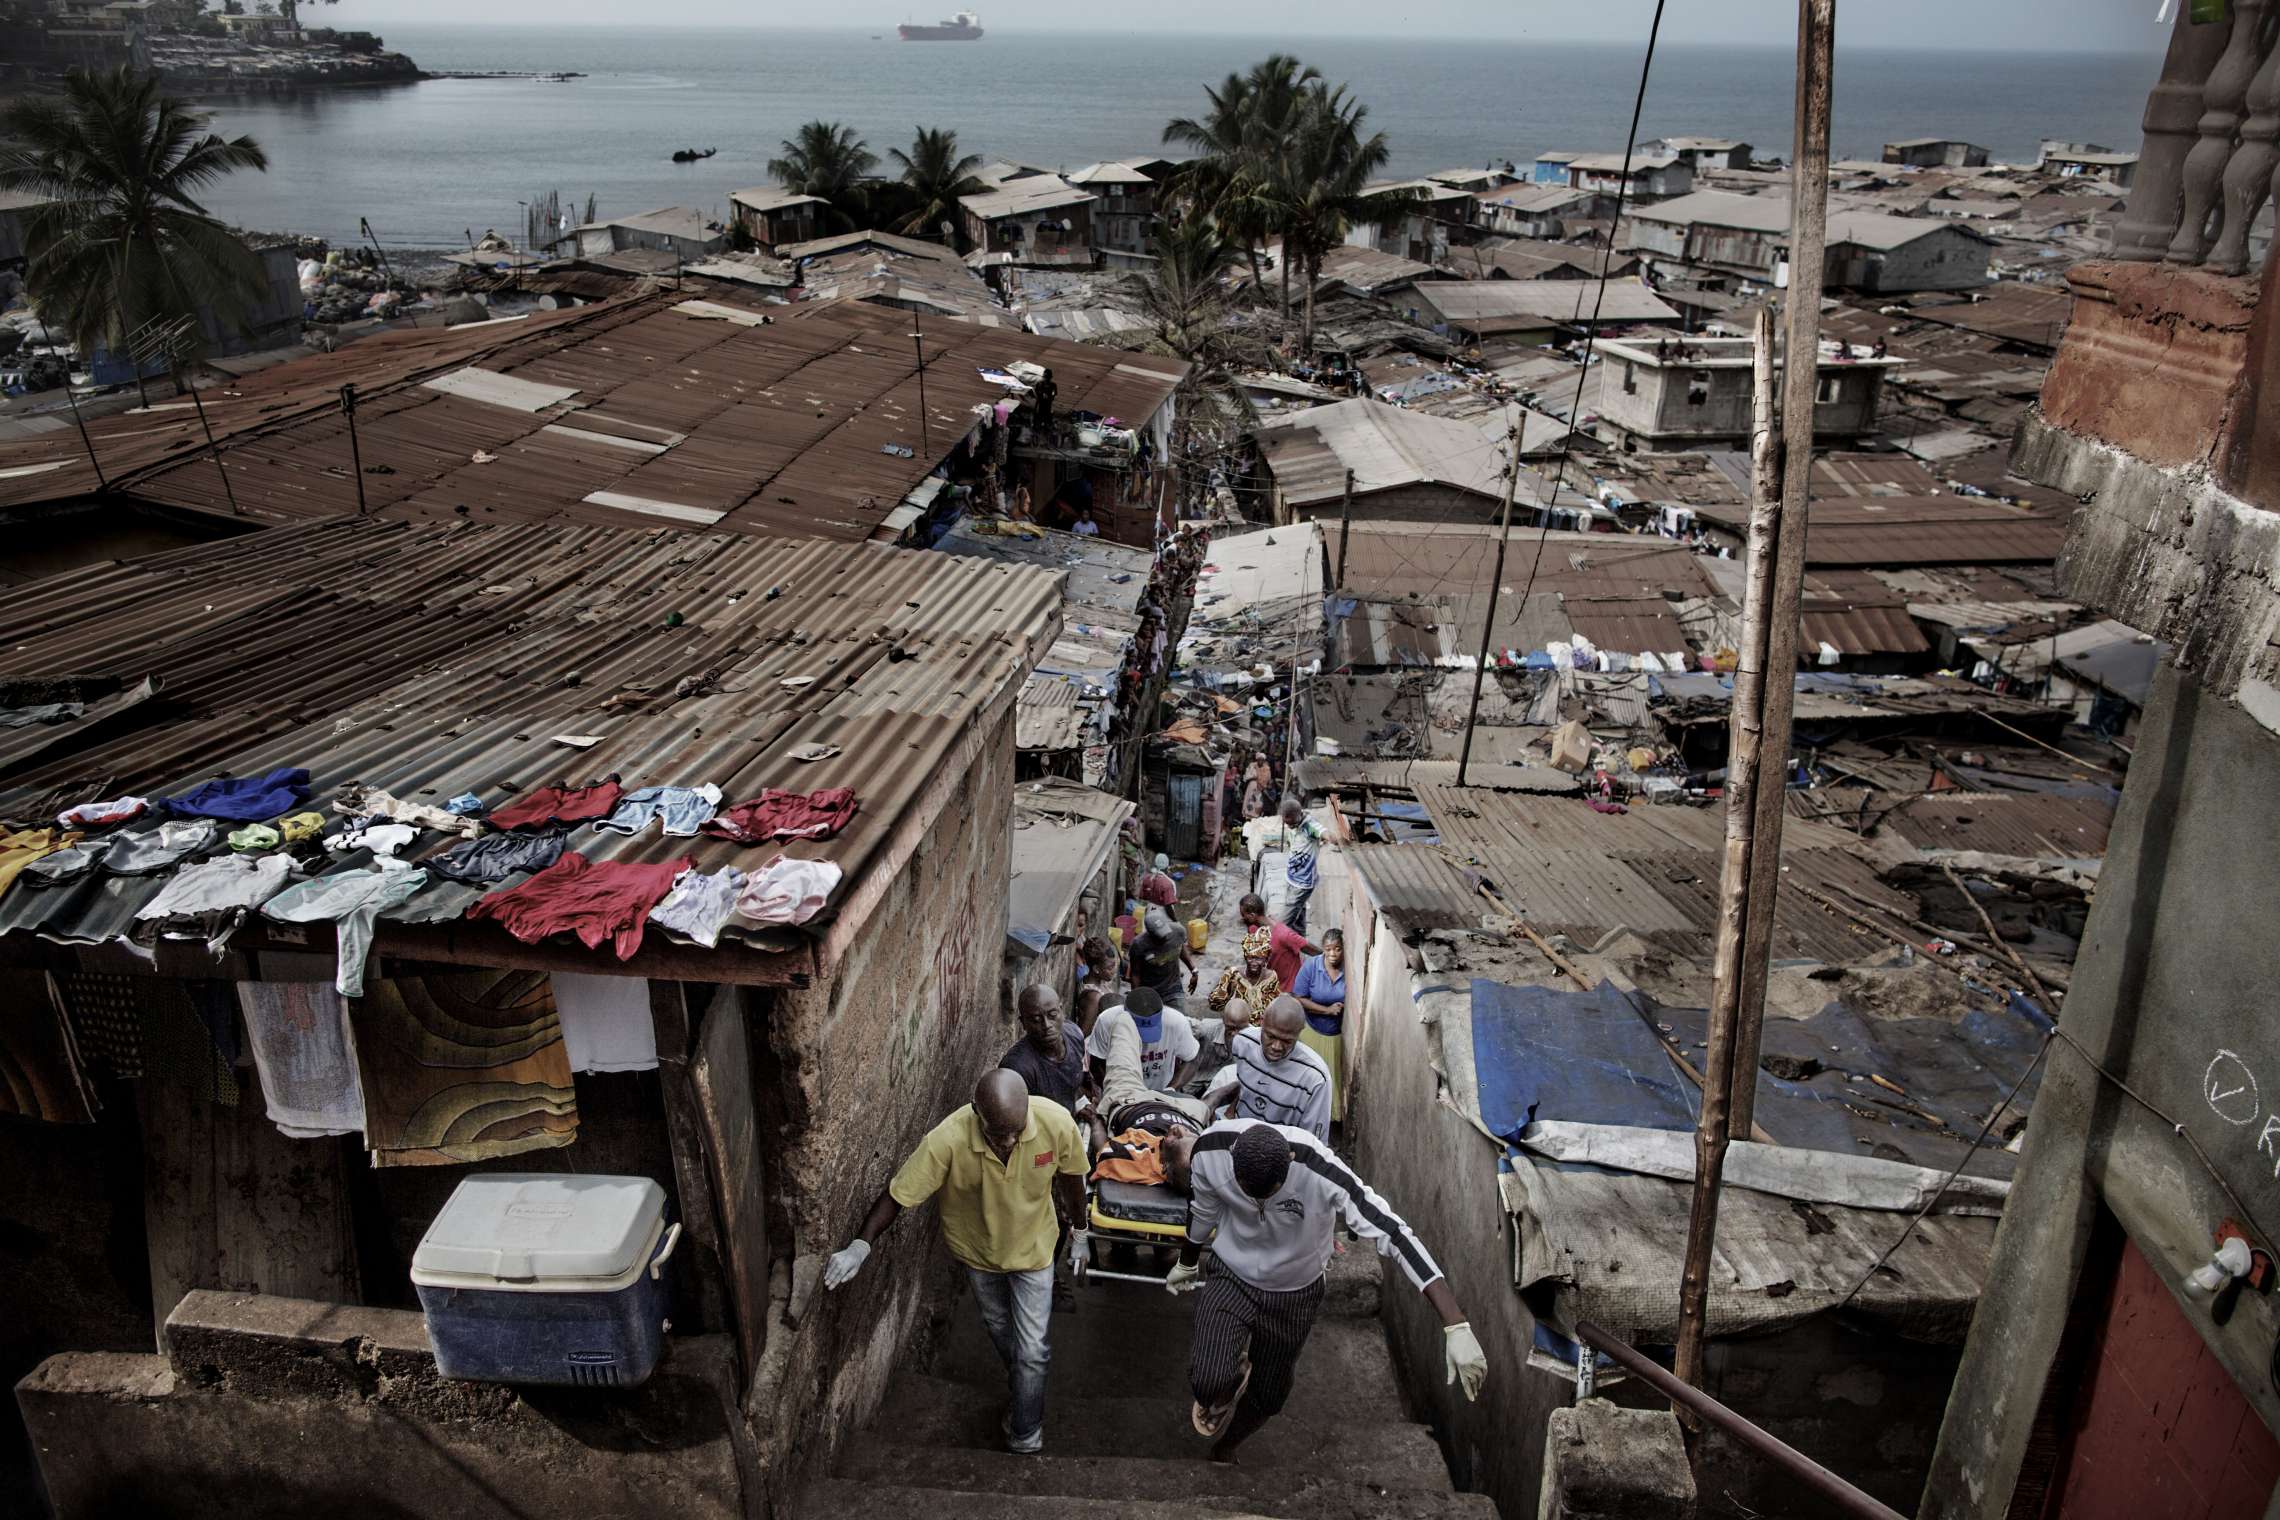 00619 2. Nyhet reportasje 21.01.2015 01/08 Ebola Et ambulanseteam bærer en mann de mistenker har ebola ut av slummen ved markedet i Freetown, Sierra Leone. Hjelpearbeidere har kjempet mot ebolaviruset siden utbruddet av det i mai 2014. Mer enn 100 helsearbeidere og 11 av Sierra Leones rundt 120 leger har omkommet. Totalt er mer enn 3.500 mennesker døde av ebola i landet i januar 2015. I løpet av året klarte man å bekjempe virsuset ved blant annet å isolere smittede landsbyer, drive helsekampanjer, stenge grenseoverganger og i siste liten kom det internasjonale samfunnet på banen med både helsehjelp og økonomisk støtte.